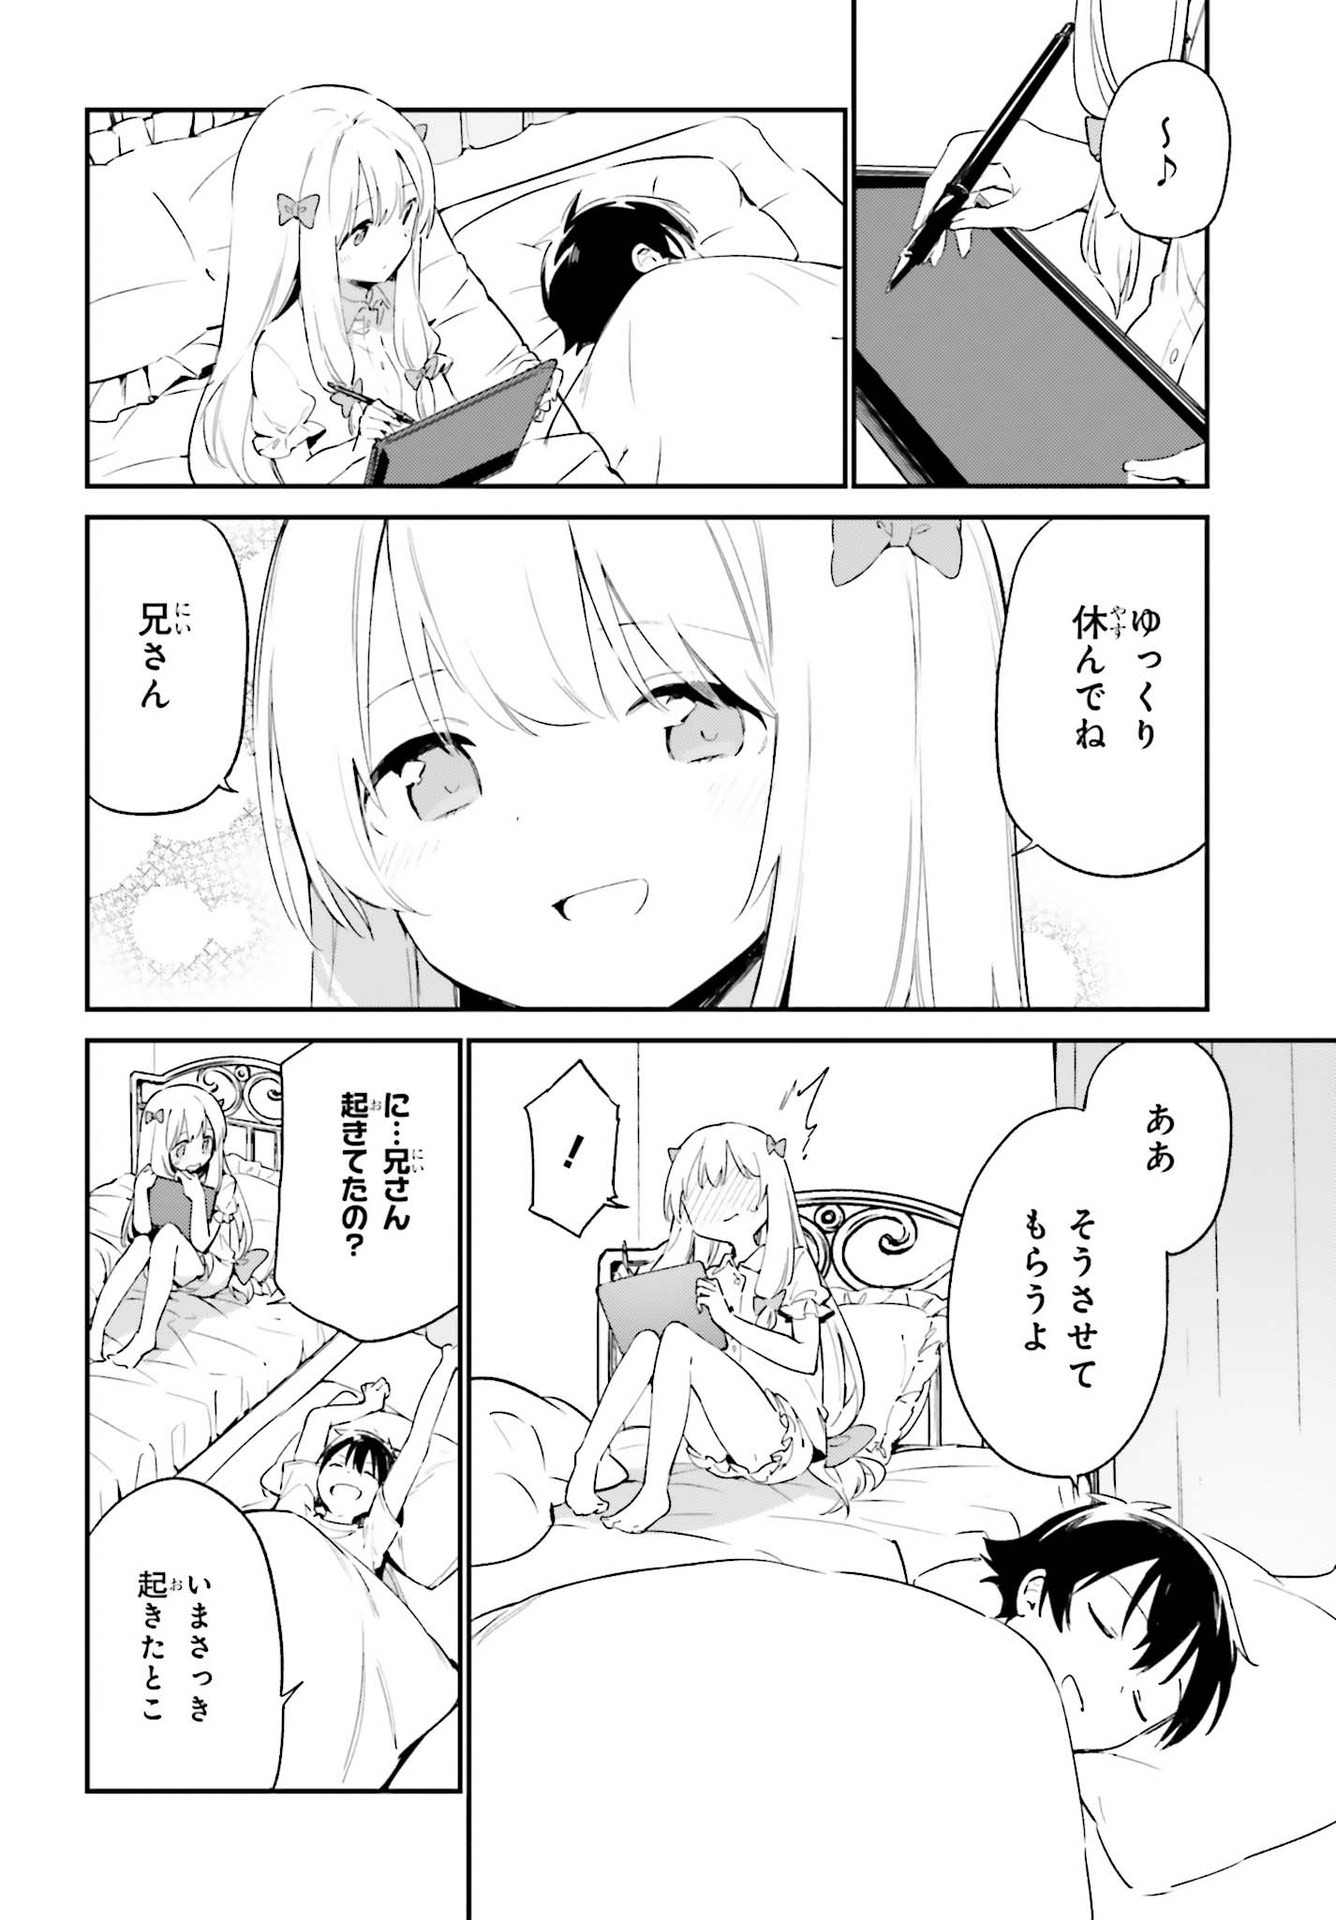 Ero Manga Sensei - Chapter 77 - Page 4